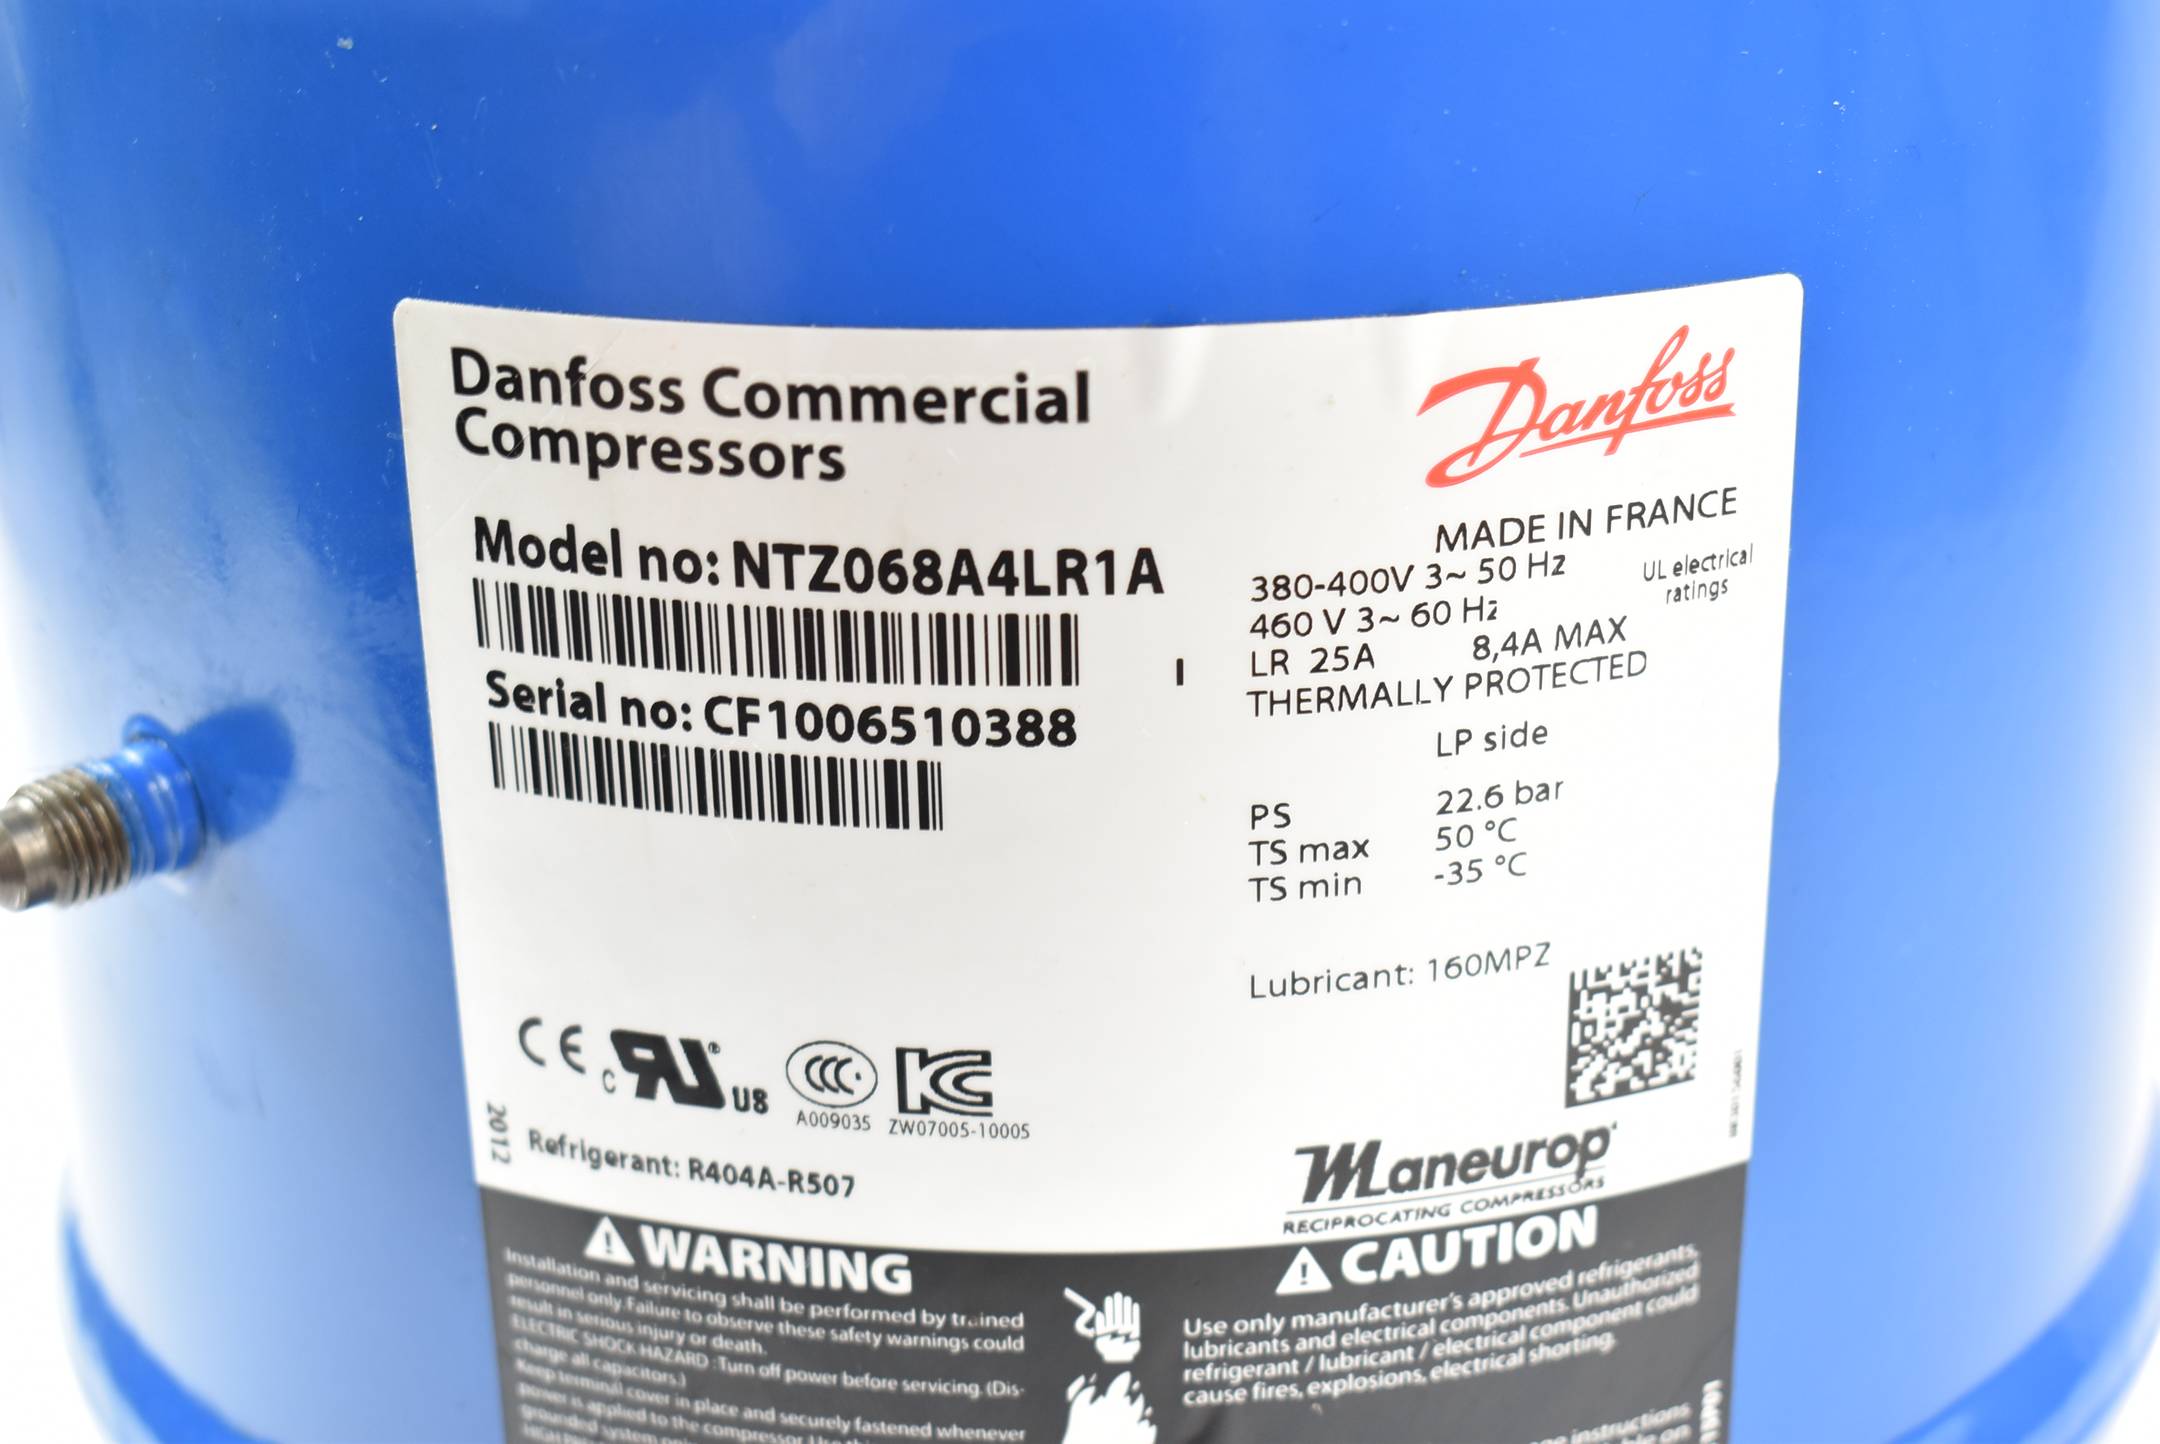 Danfoss Commercial Compressors NTZ068A4LR1A